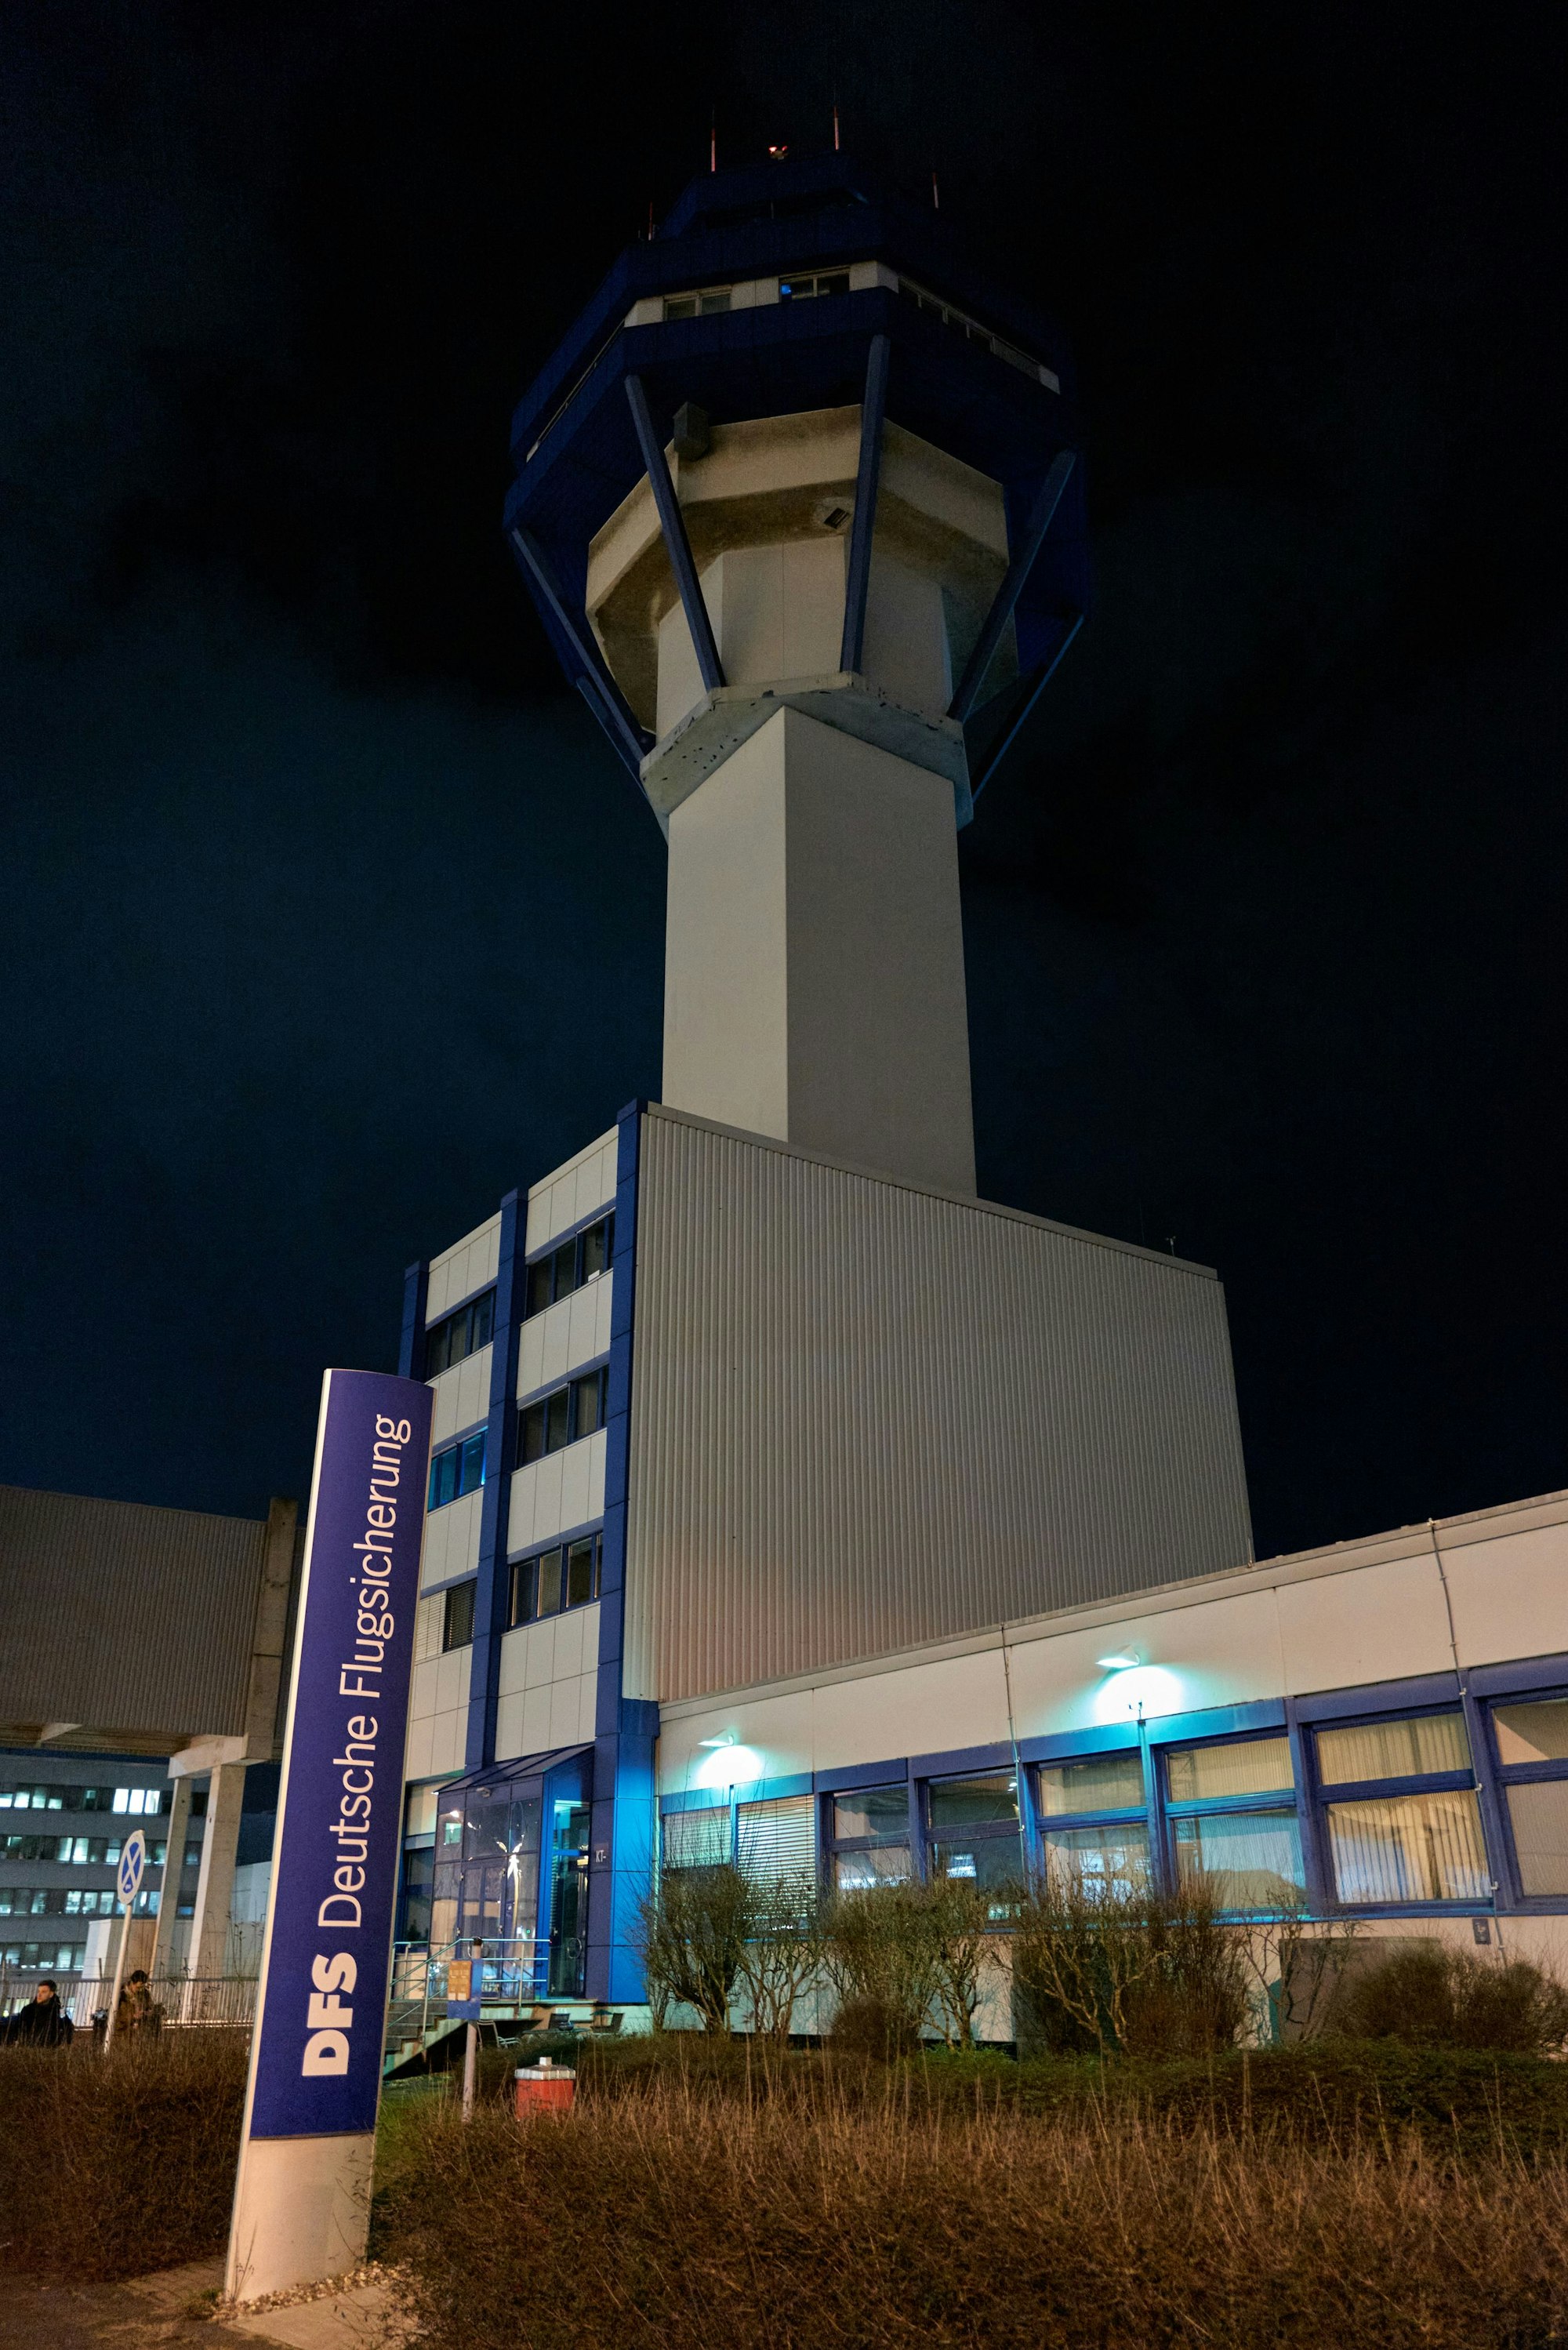 09.02.2023, Flughafen Köln-Bonn: Wir dokumentieren, was nachts auf dem Flughafen passiert. Der „neue“ Tower der DFS, Deutsche Flugsicherung. Foto: Christian Festag